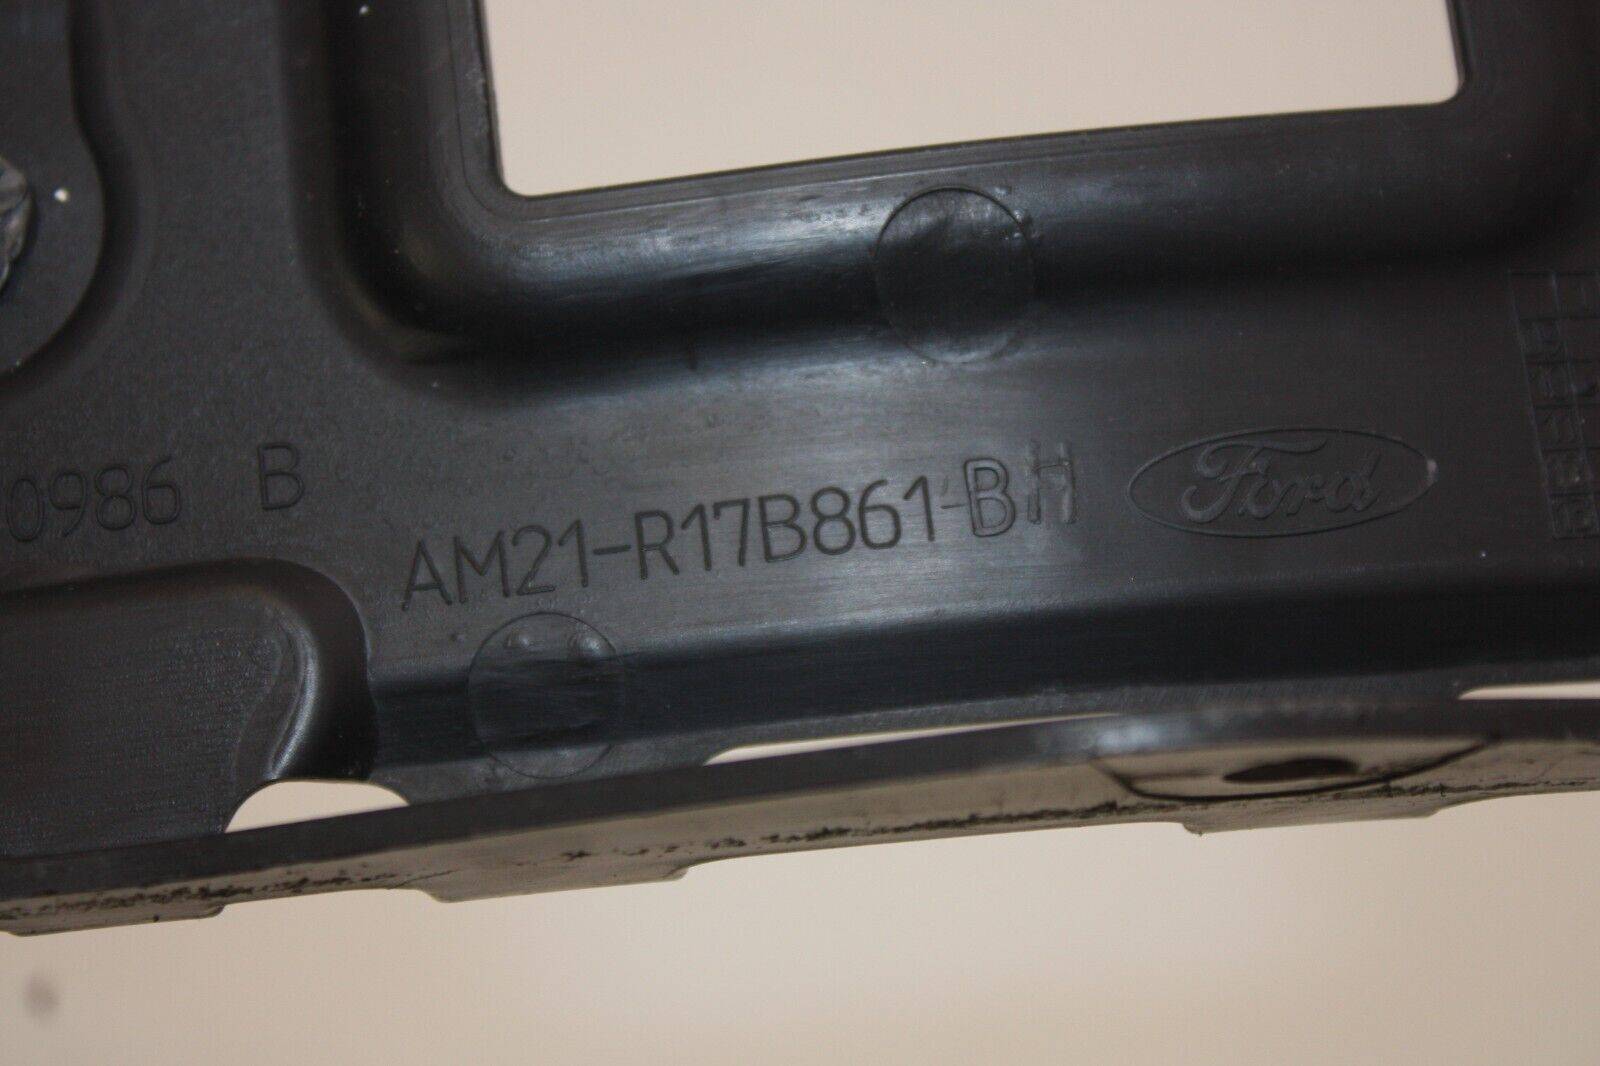 Ford-S-Max-Rear-Bumper-Support-Bracket-Bar-AM21-R17B861-B-Genuine-175611657404-9